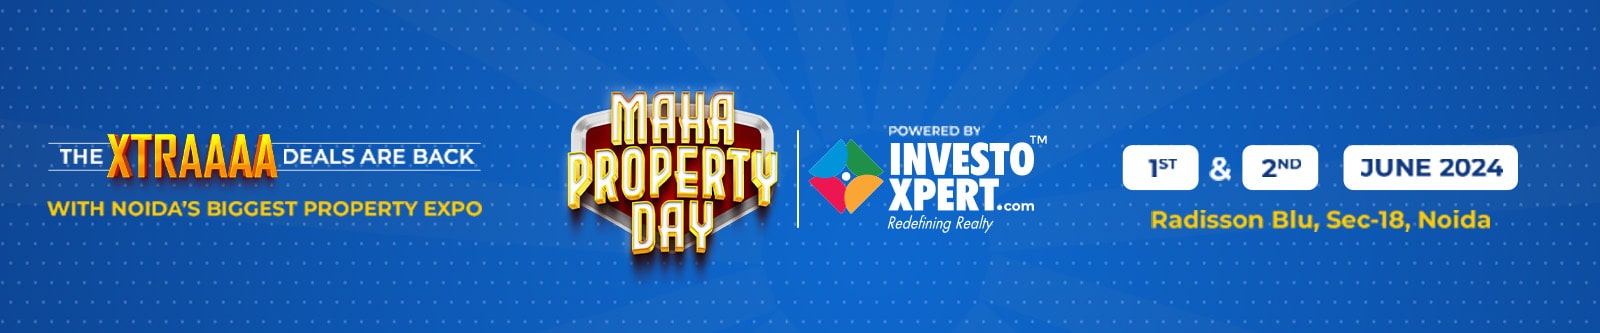 Maha Property Day Noida